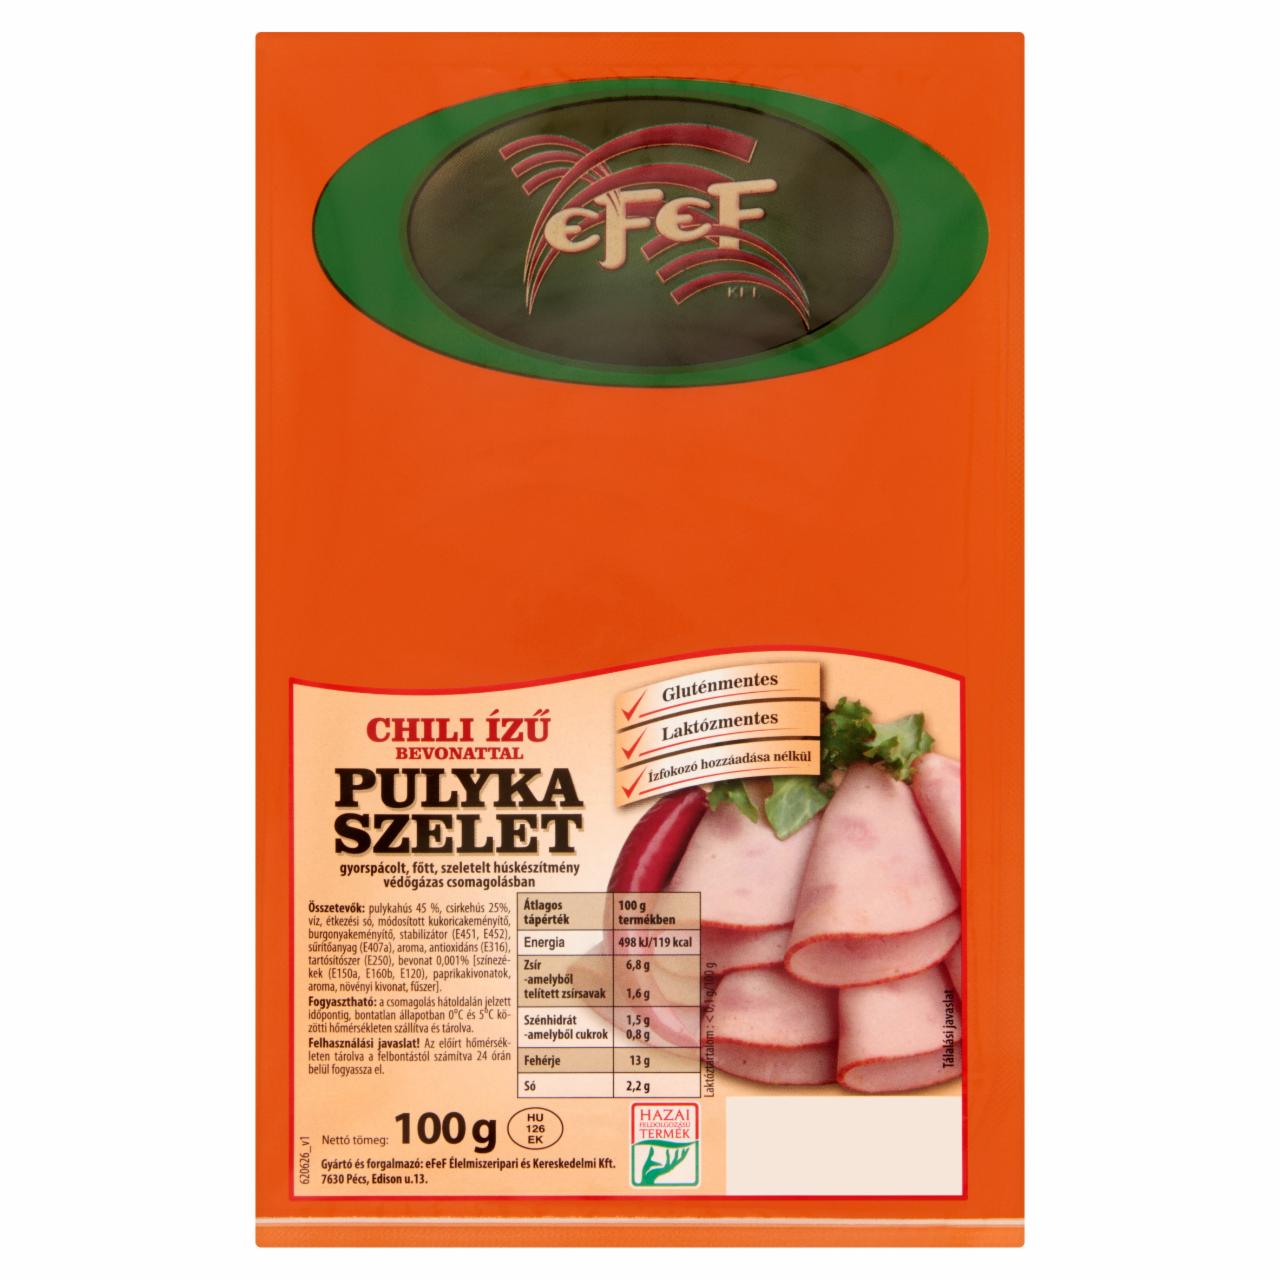 Képek - eFeF pulyka szelet chili ízű bevonattal 100 g